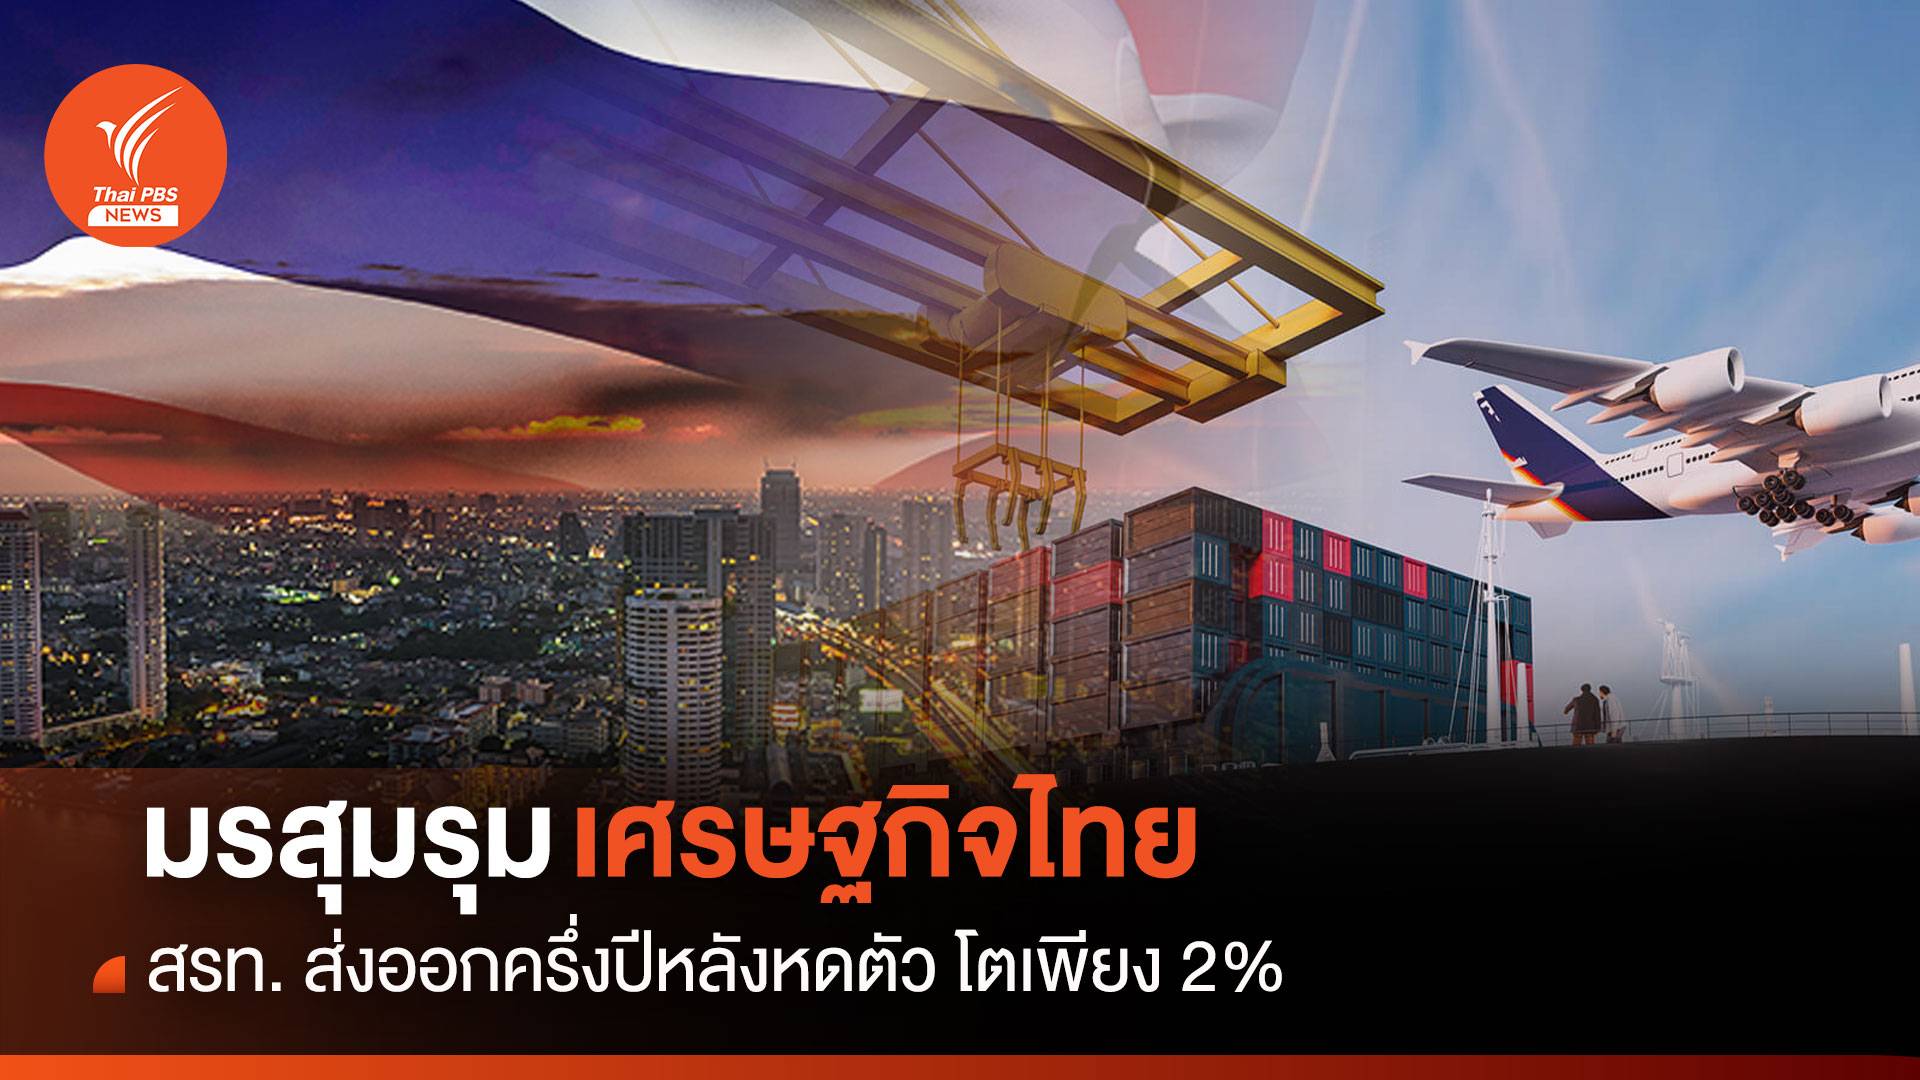 มรสุมรุมเศรษฐกิจไทย สรท. ชี้ส่งออกครึ่งปีหลังหดตัว โตเพียง 2%